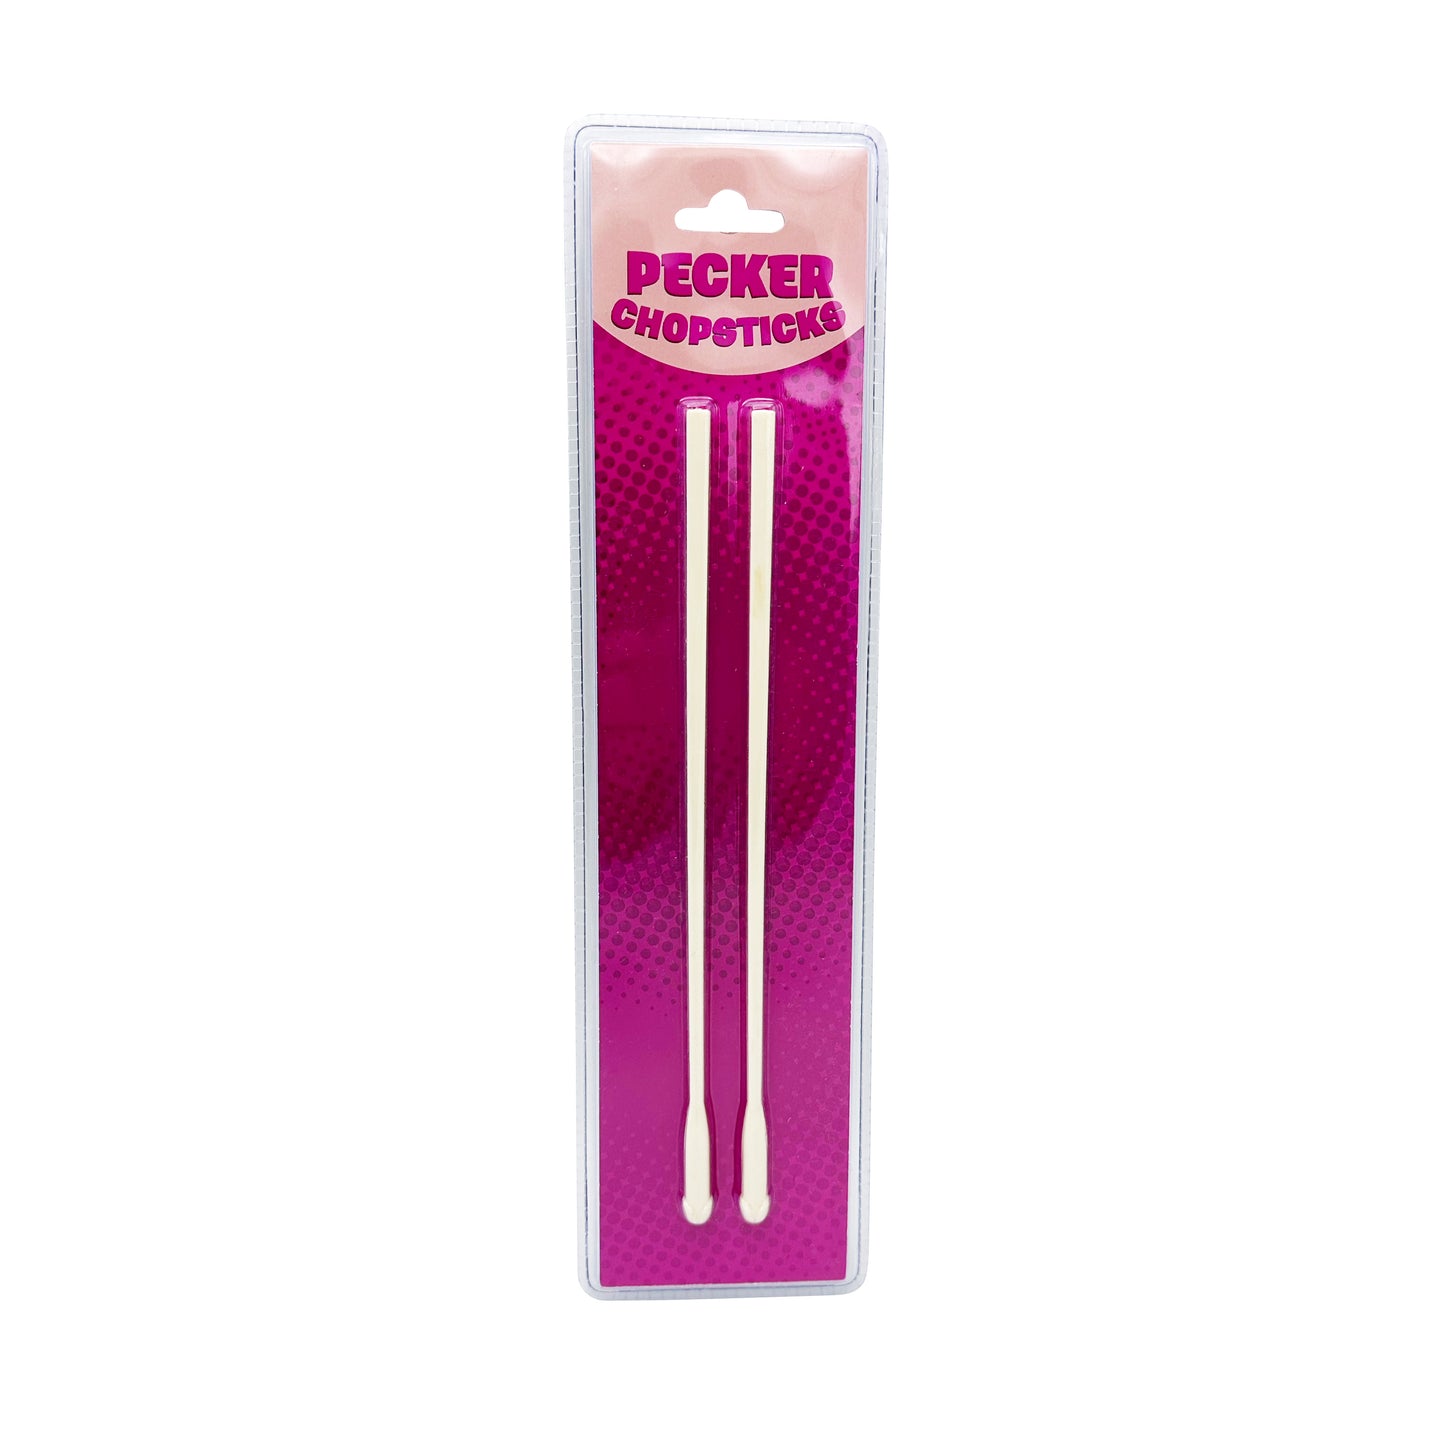 Pecker Chopsticks